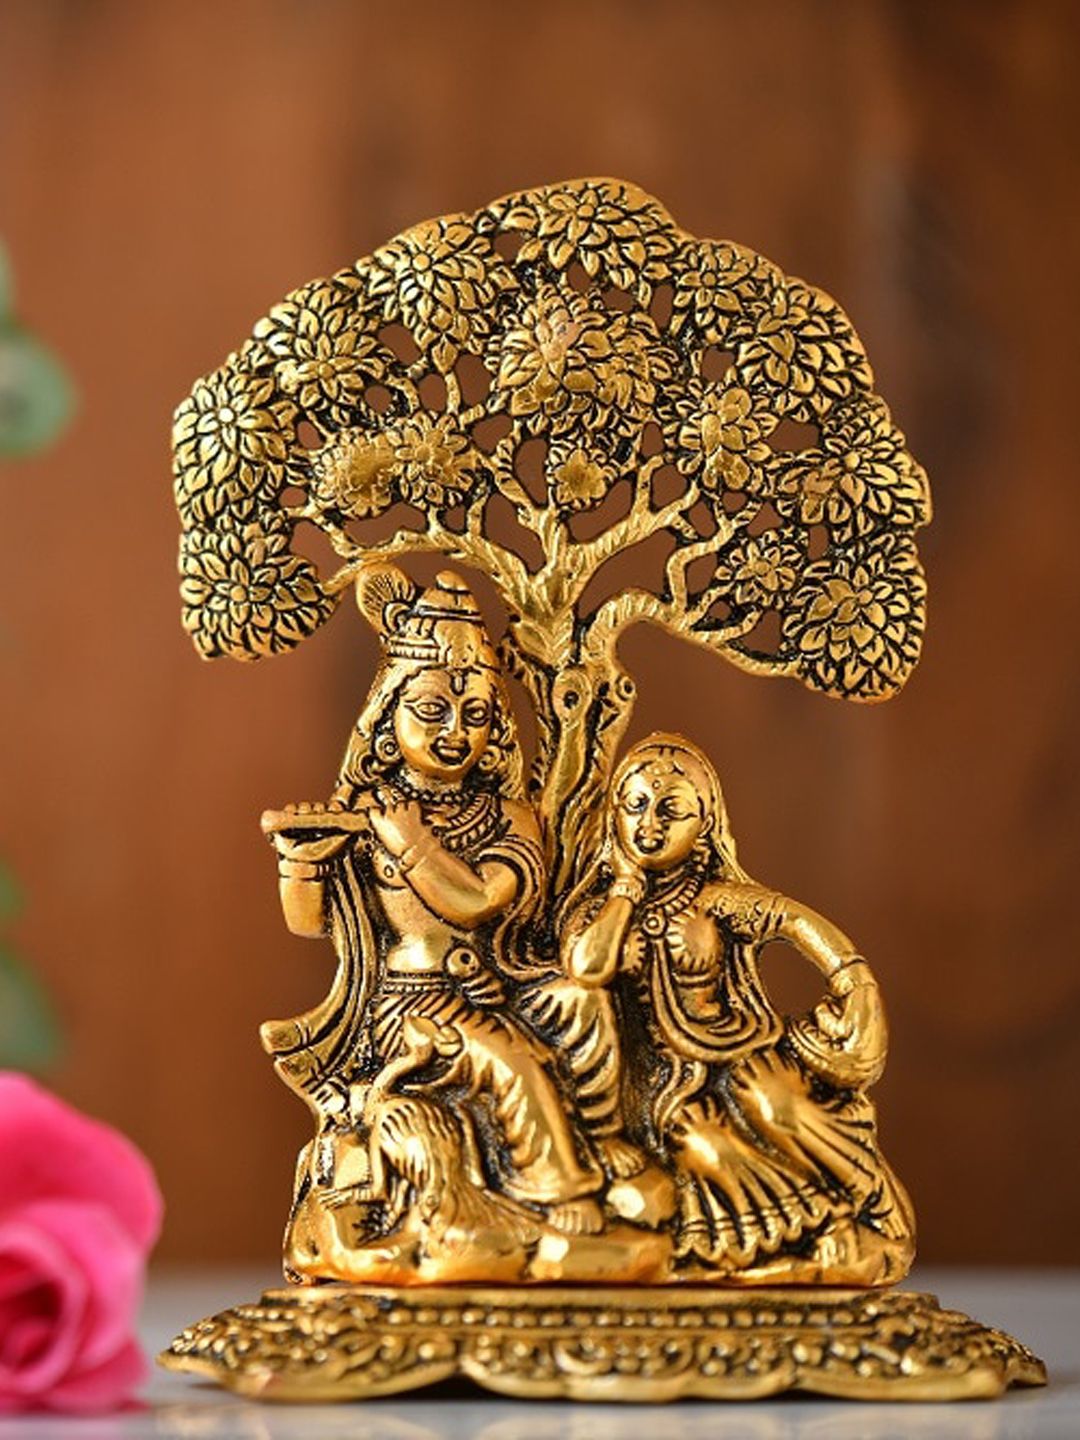 Fashion Bizz Gold-Colored Krishna Idol Showpieces Price in India